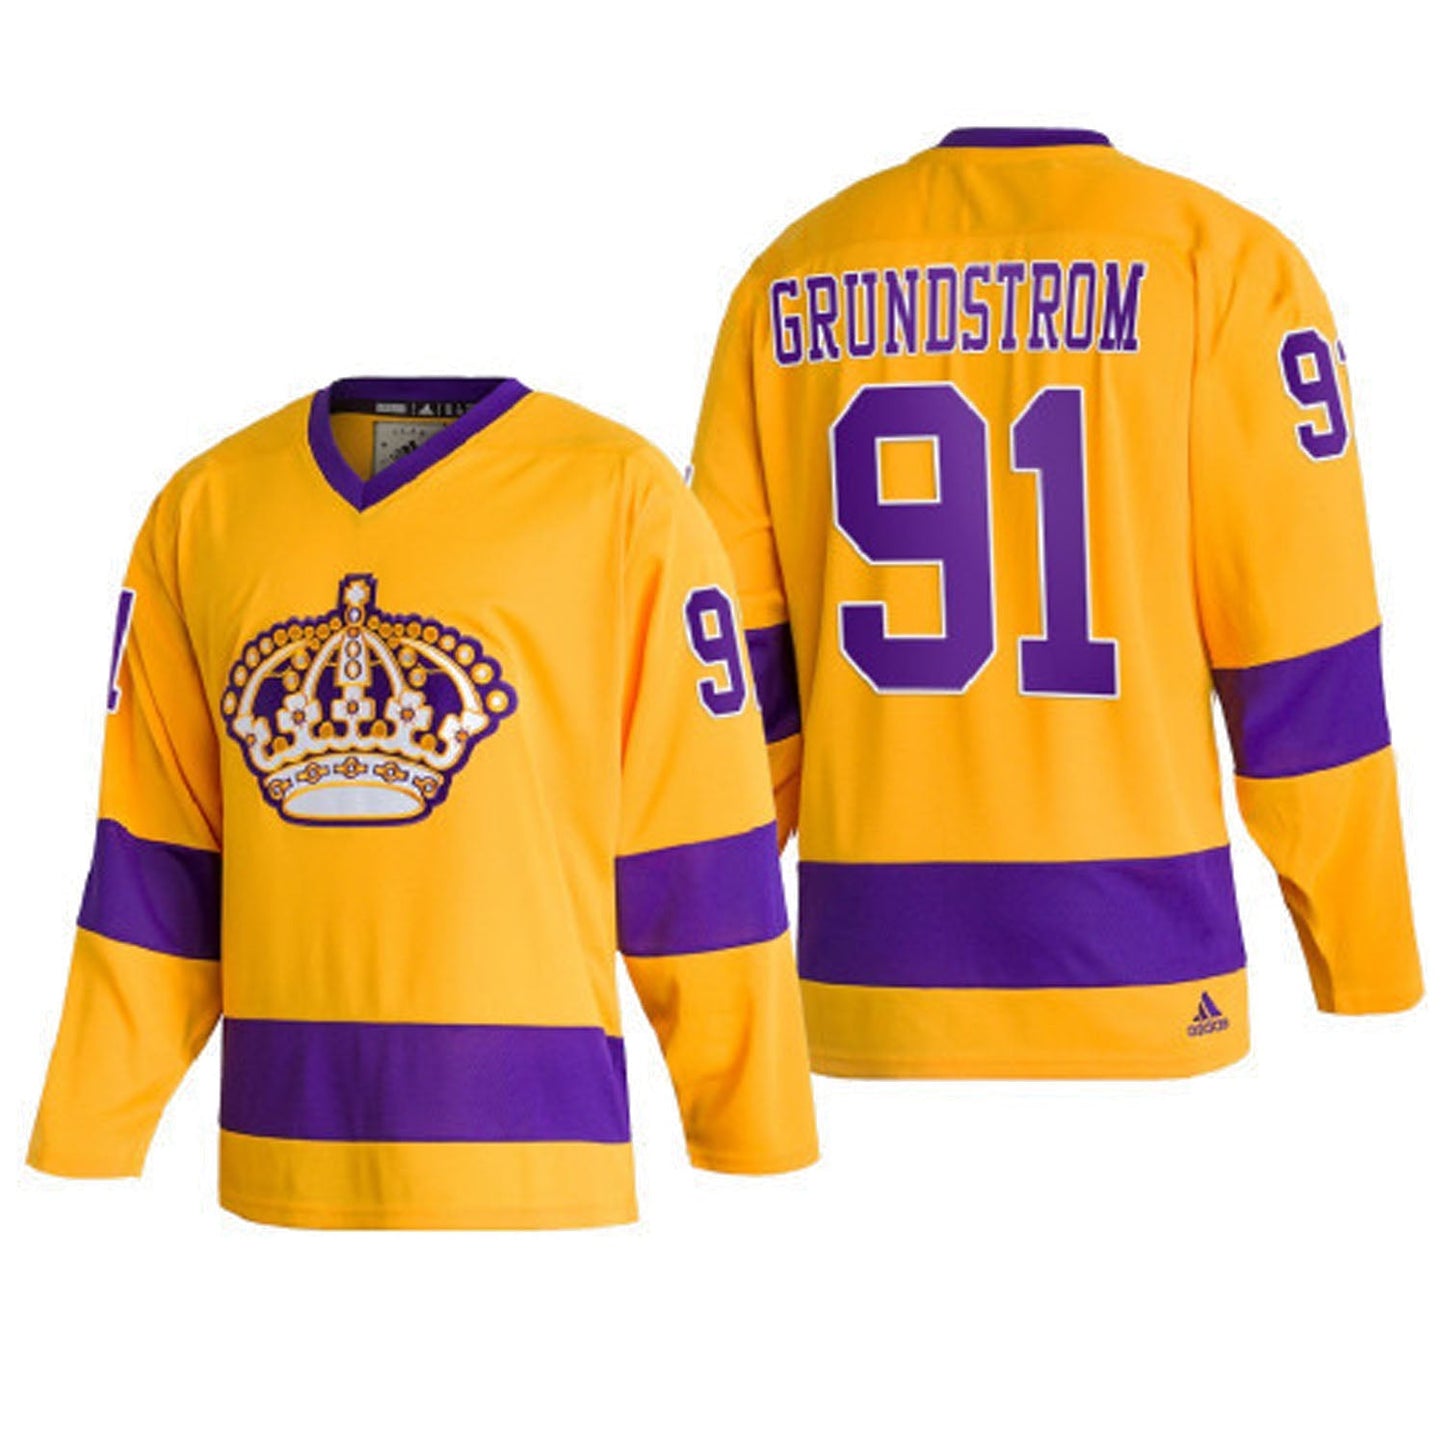 NHL Carl Grundstrom La Kings 91 Jersey